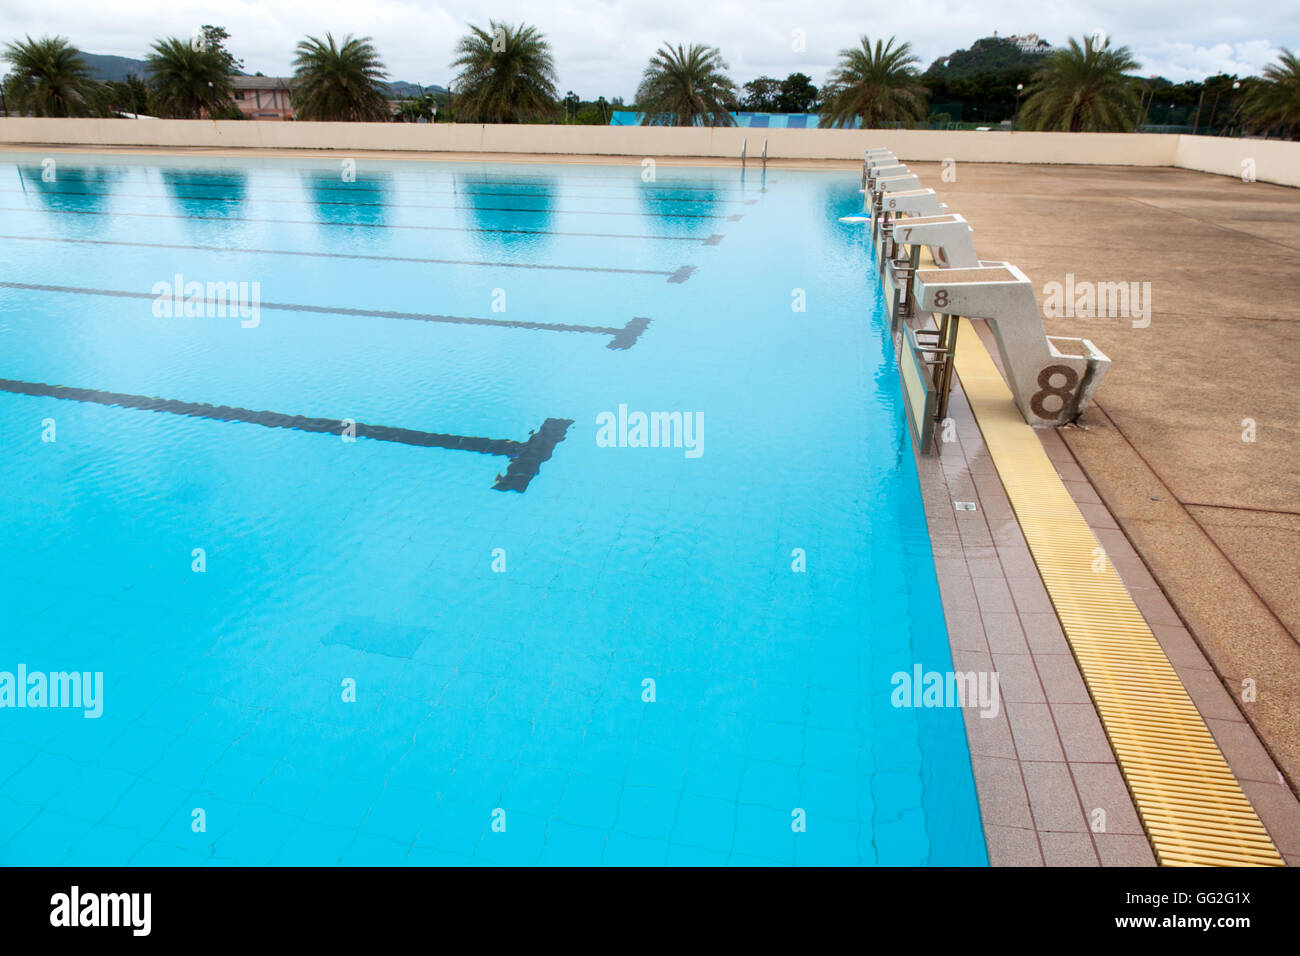 L'eau bleu piscine à vagues reflète avec la lumière du soleil , blue tile ceramic de natation course et sports d'eau. Banque D'Images